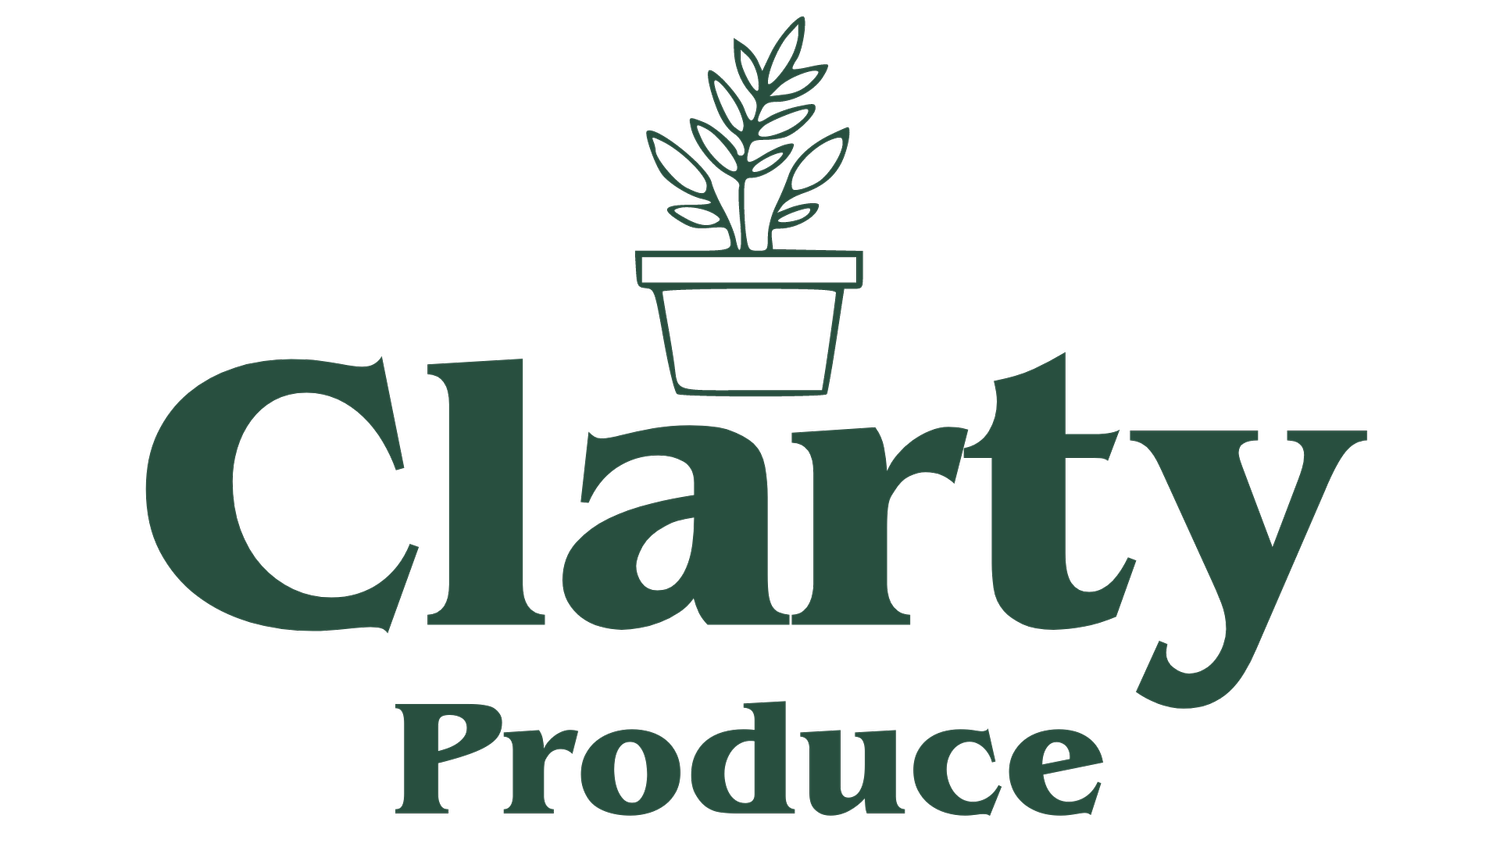 Clarty Produce